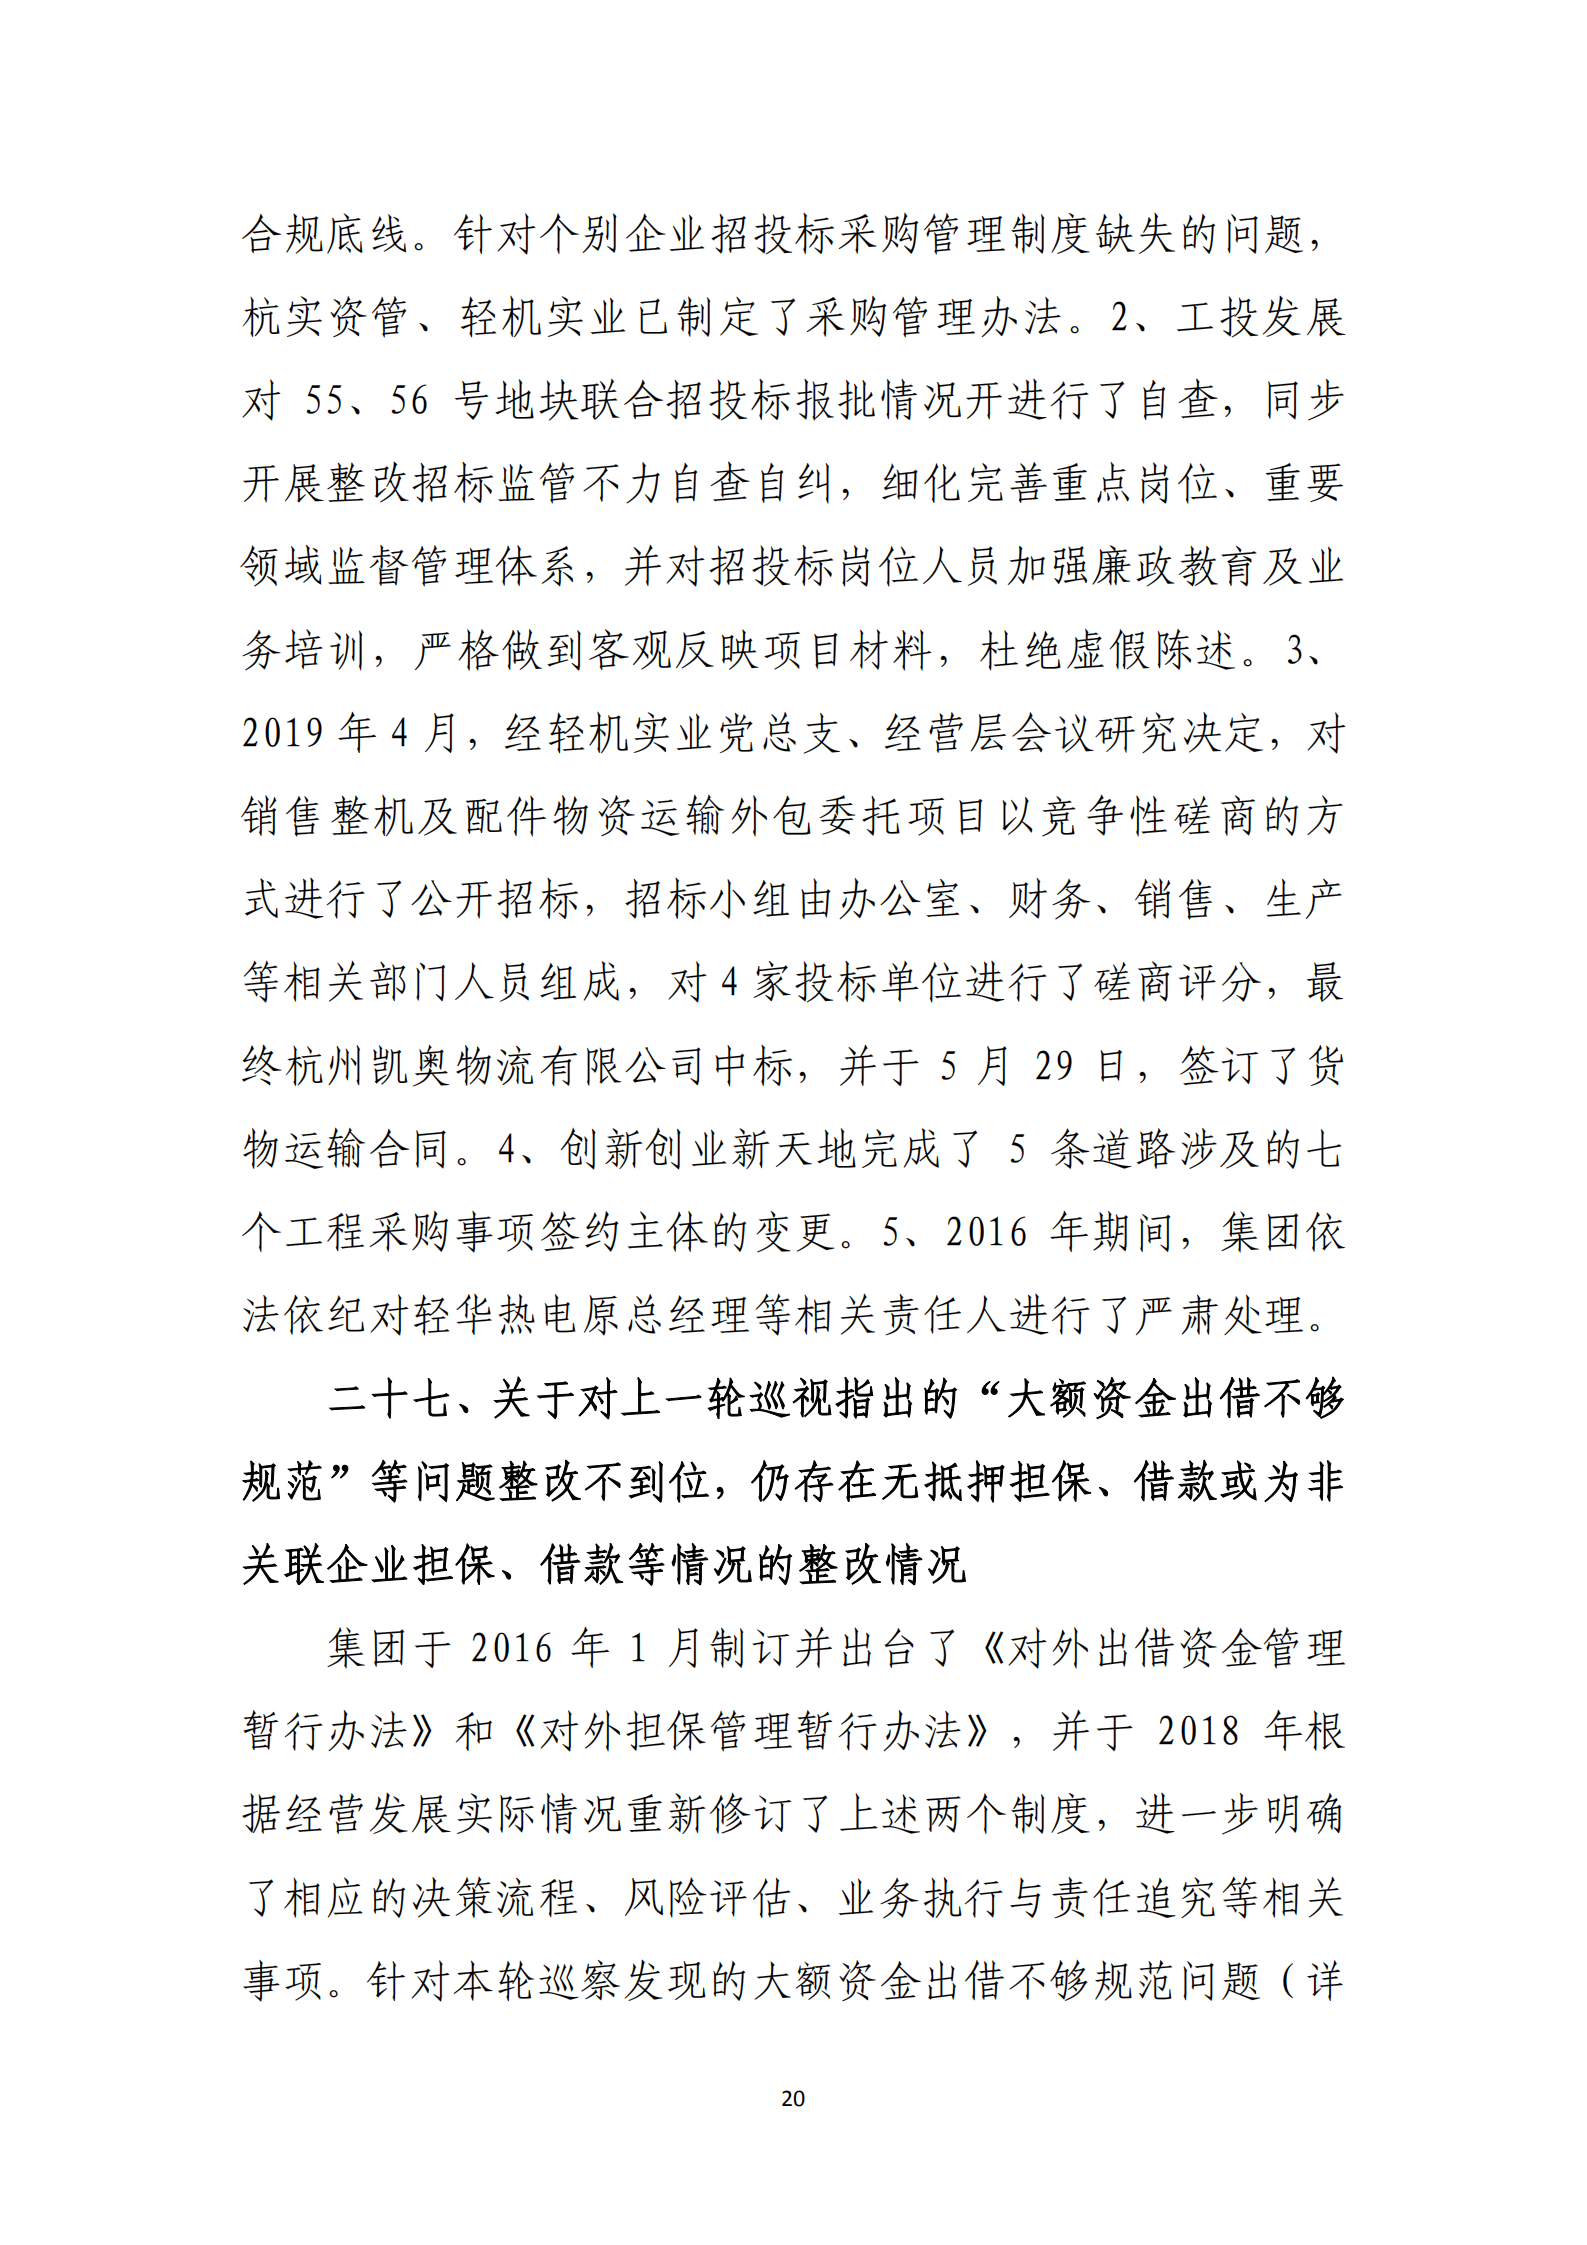 博乐体育网页【中国】有限公司党委关于巡察整改情况的通报_19.png